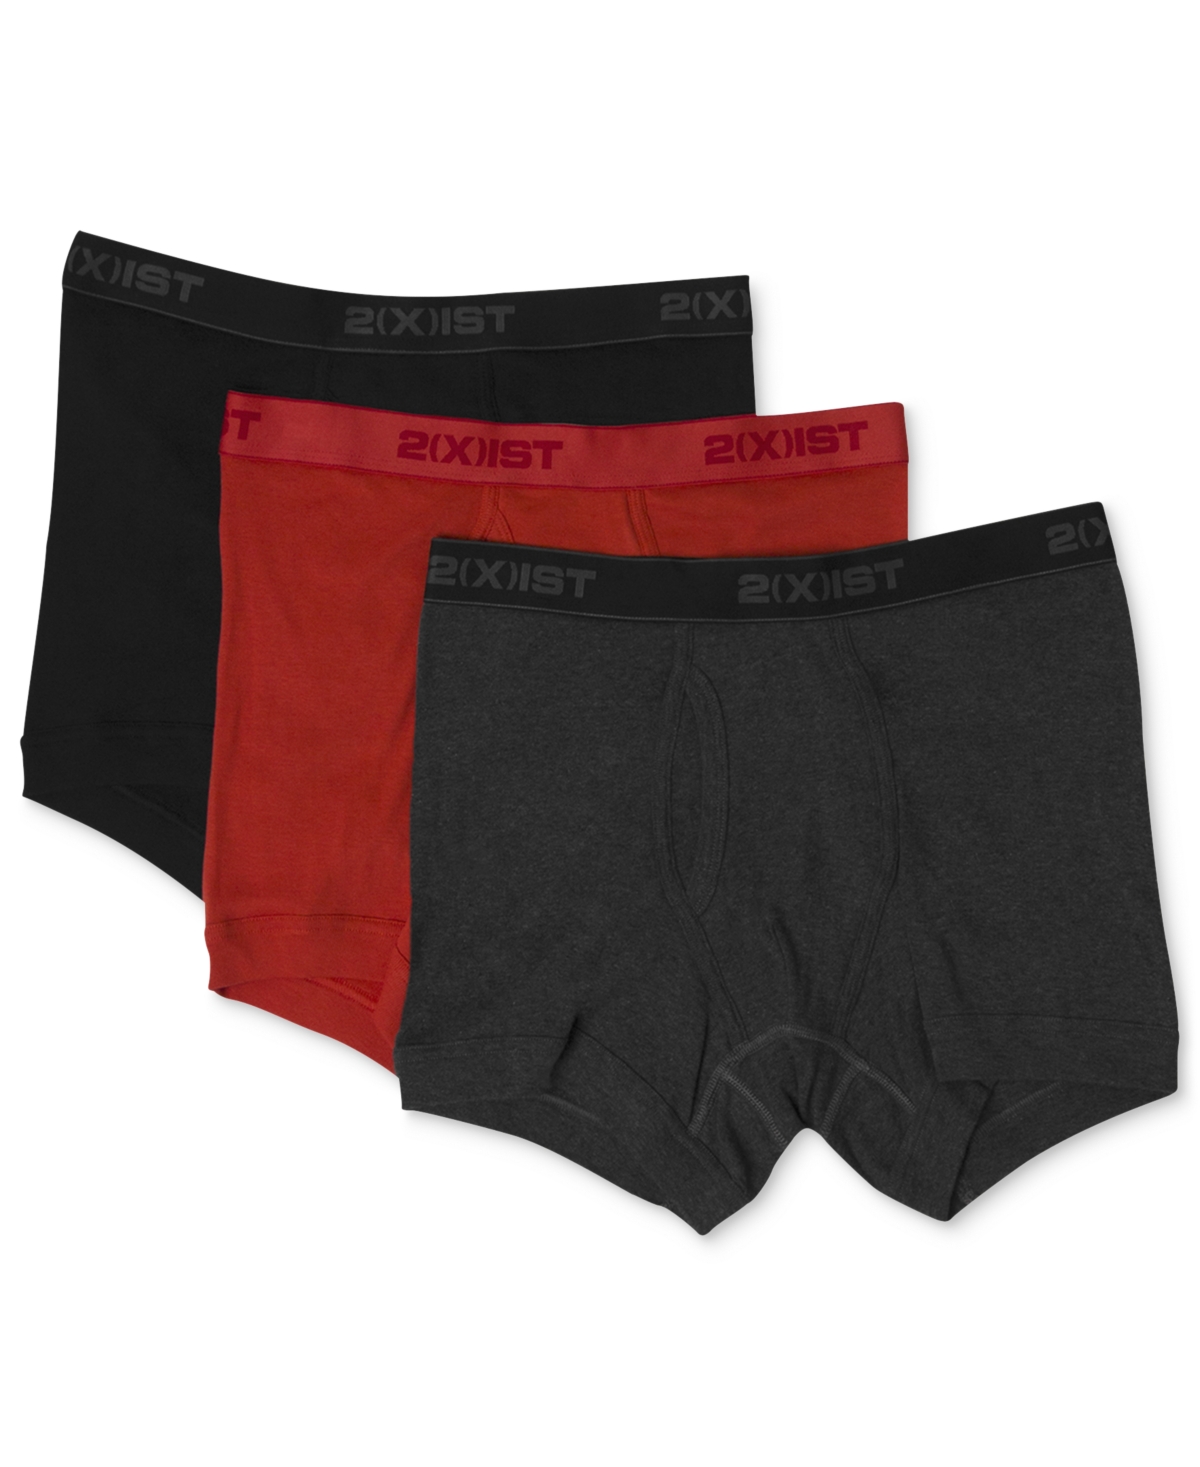 2(x)ist Men's Underwear, Essentials Boxer Brief 3 Pack - Navy/cobal